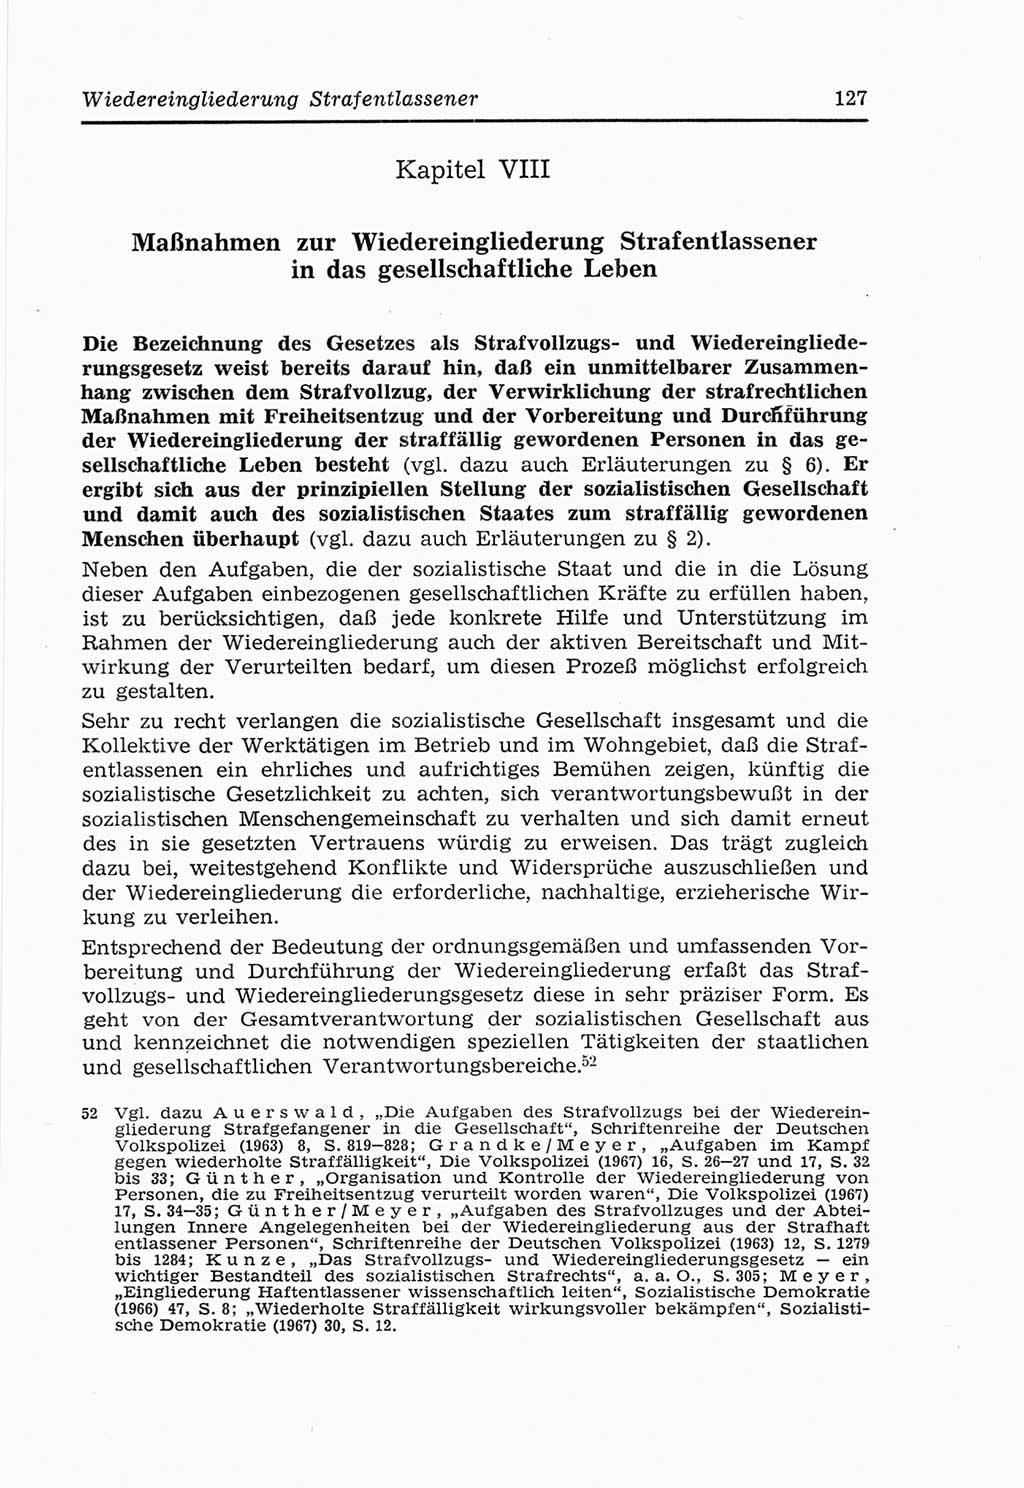 Strafvollzugs- und Wiedereingliederungsgesetz (SVWG) der Deutschen Demokratischen Republik (DDR) 1968, Seite 127 (SVWG DDR 1968, S. 127)